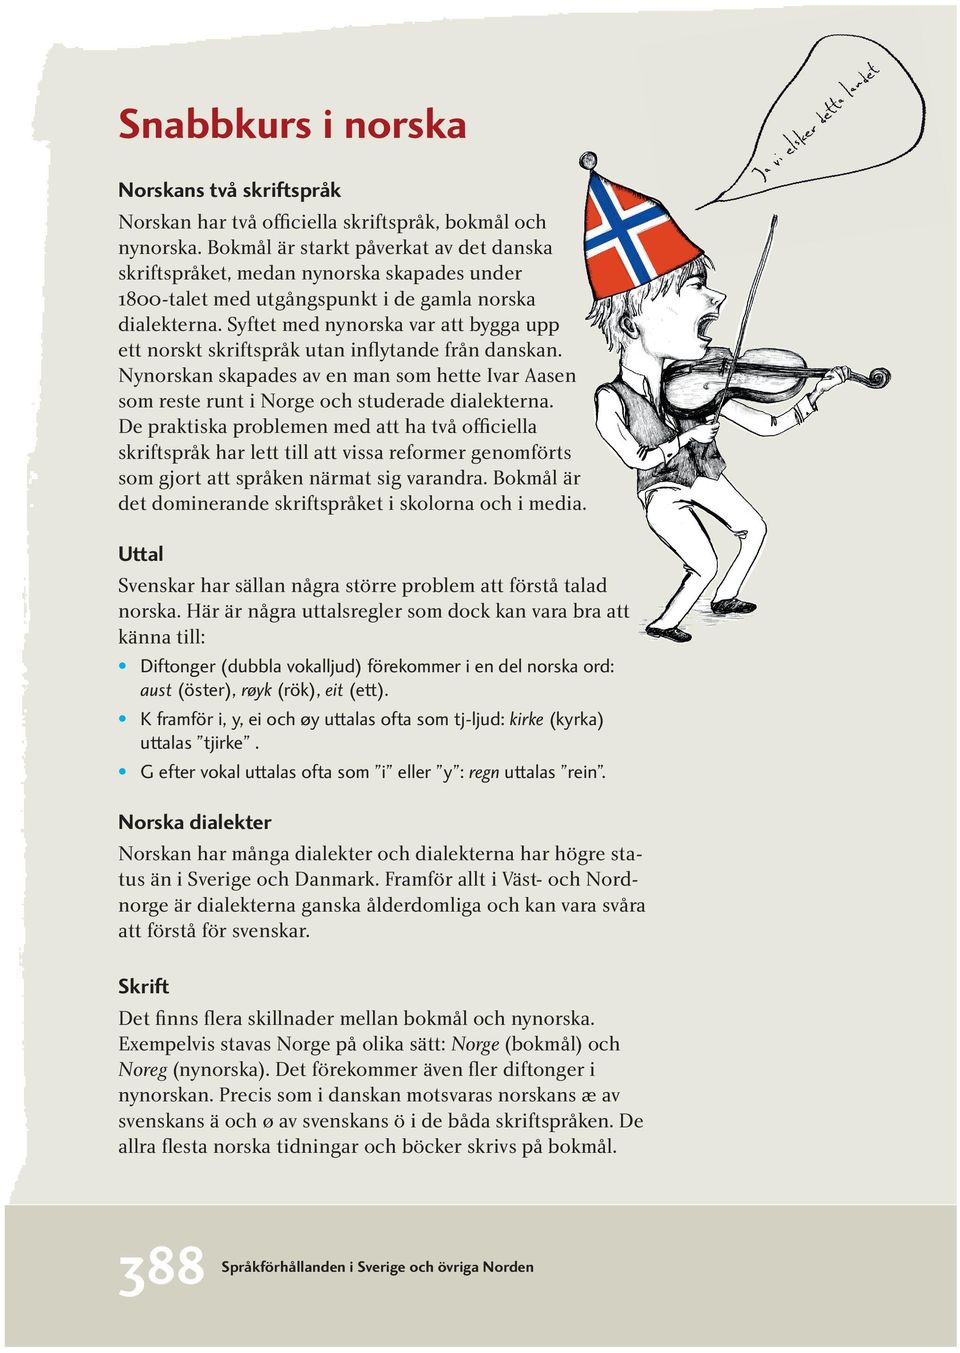 Syftet med nynorska var att bygga upp ett norskt skriftspråk utan inflytande från danskan. Nynorskan skapades av en man som hette Ivar Aasen som reste runt i Norge och studerade dialekterna.